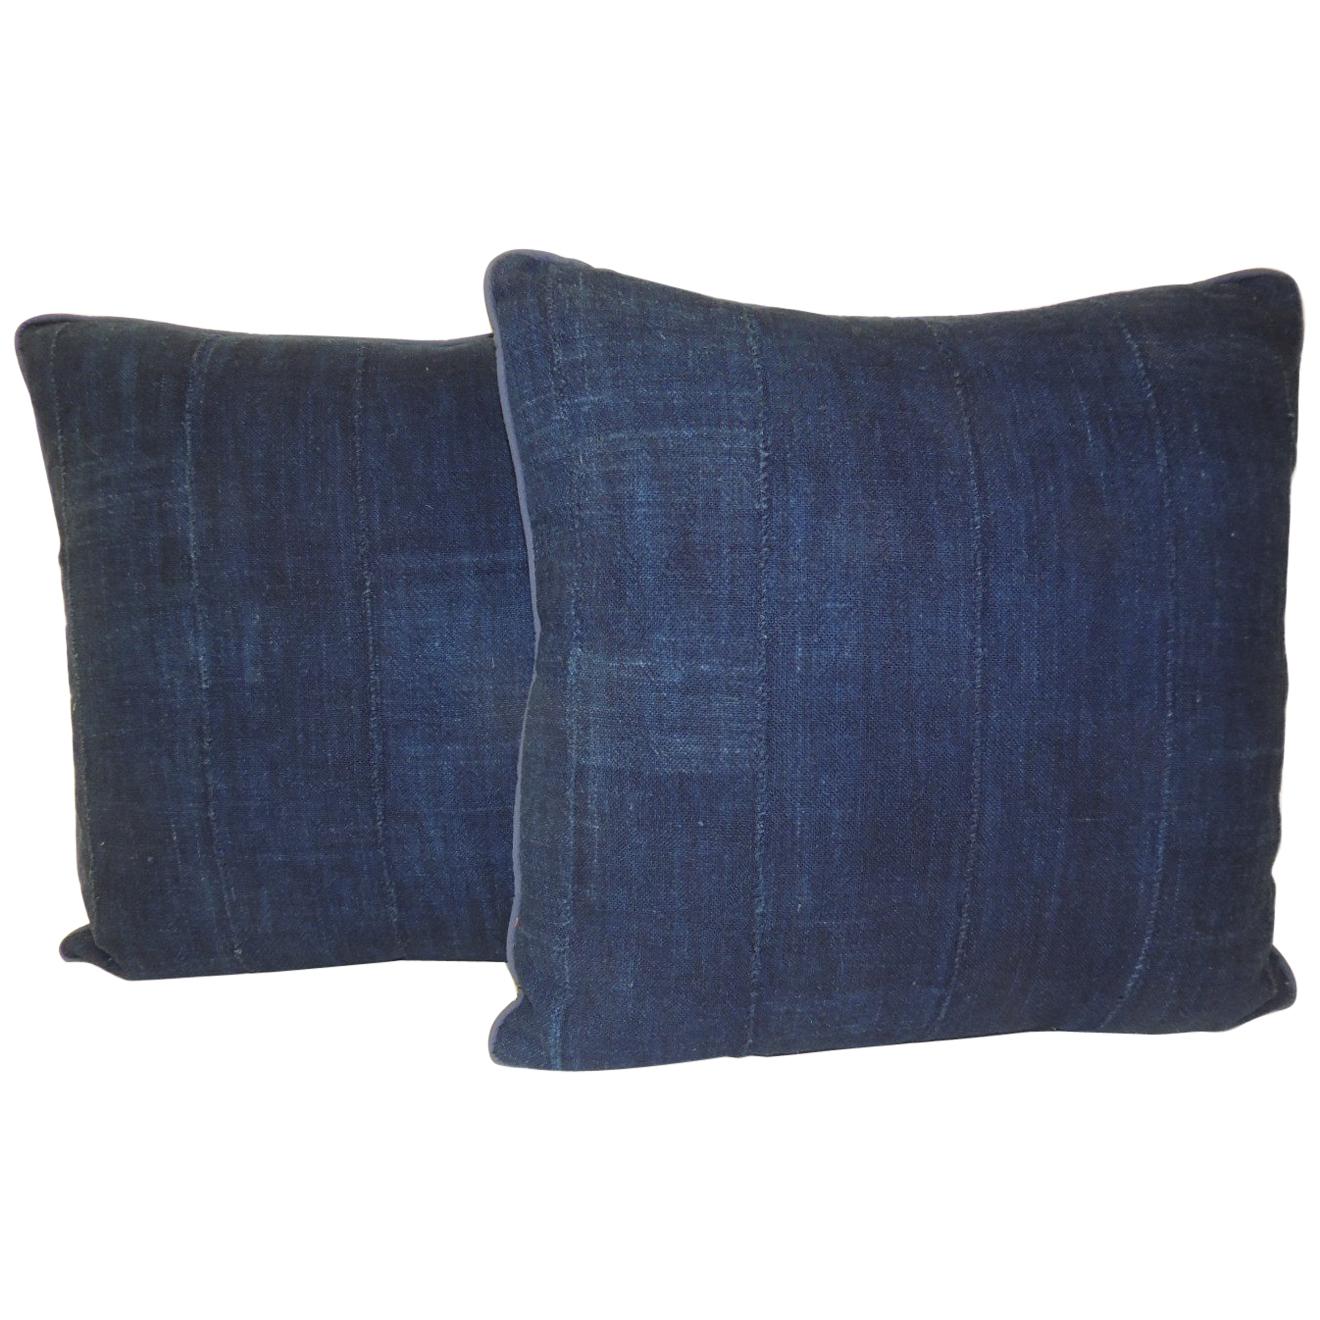 Pair of Indigo Woven Strips African Decorative Pillows